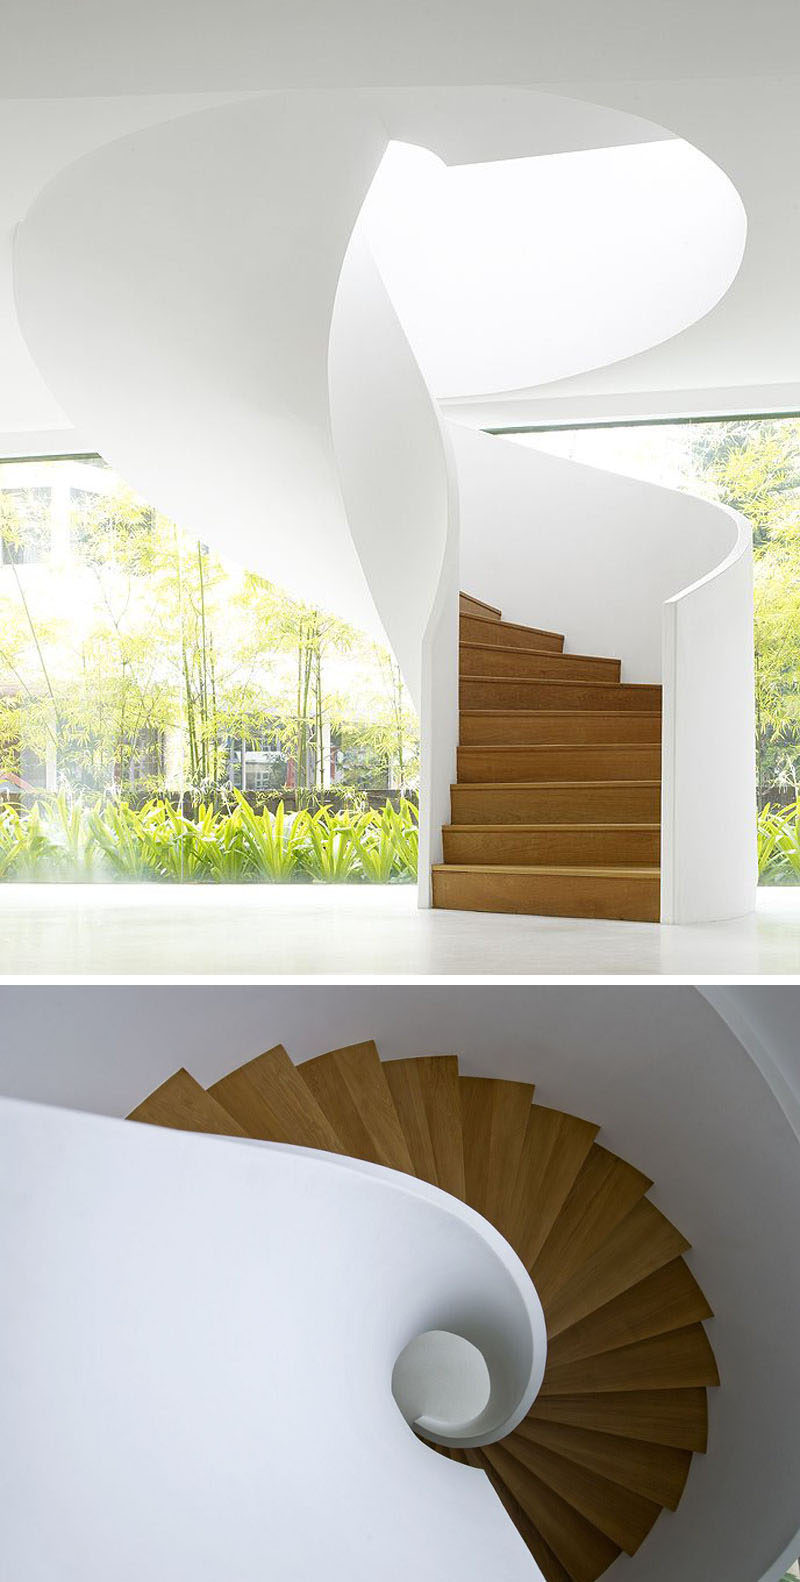 Гладкий внешний вид этой современной винтовой лестницы из белого и дерева создает впечатление, что она могла просто скрутиться с потолка. # Спиральная лестница # Спиральная лестница # Современная спиральная лестница